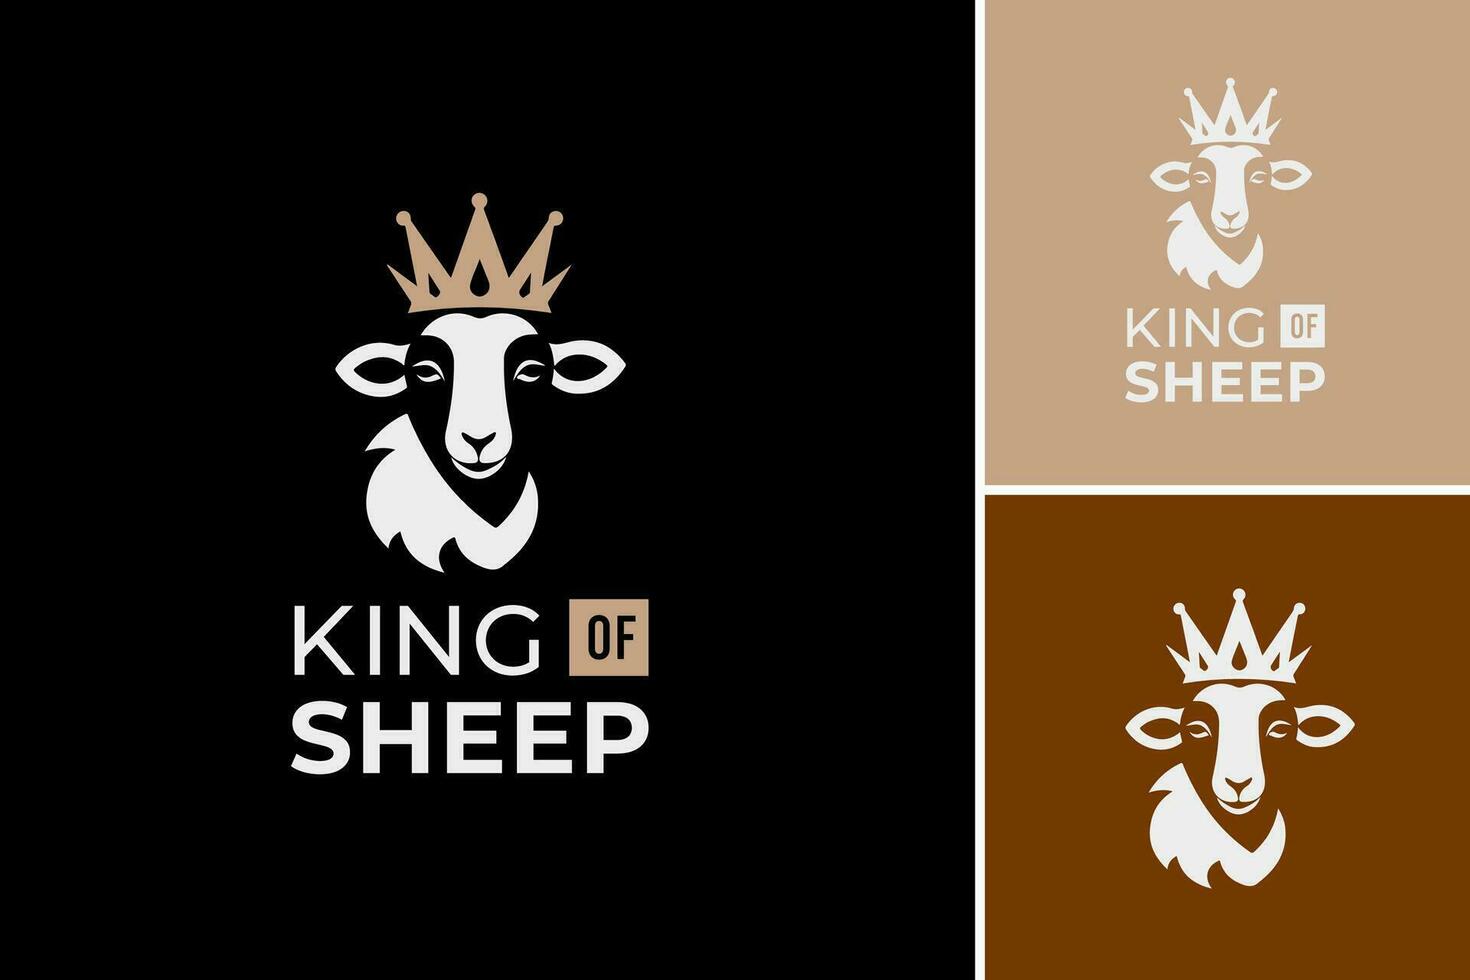 rei do ovelha logotipo é uma Projeto de ativos adequado para uma marca ou companhia relacionado para ovelha agricultura ou lã Produção. isto captura a essência do Liderança e domínio dentro a ovelha indústria. vetor